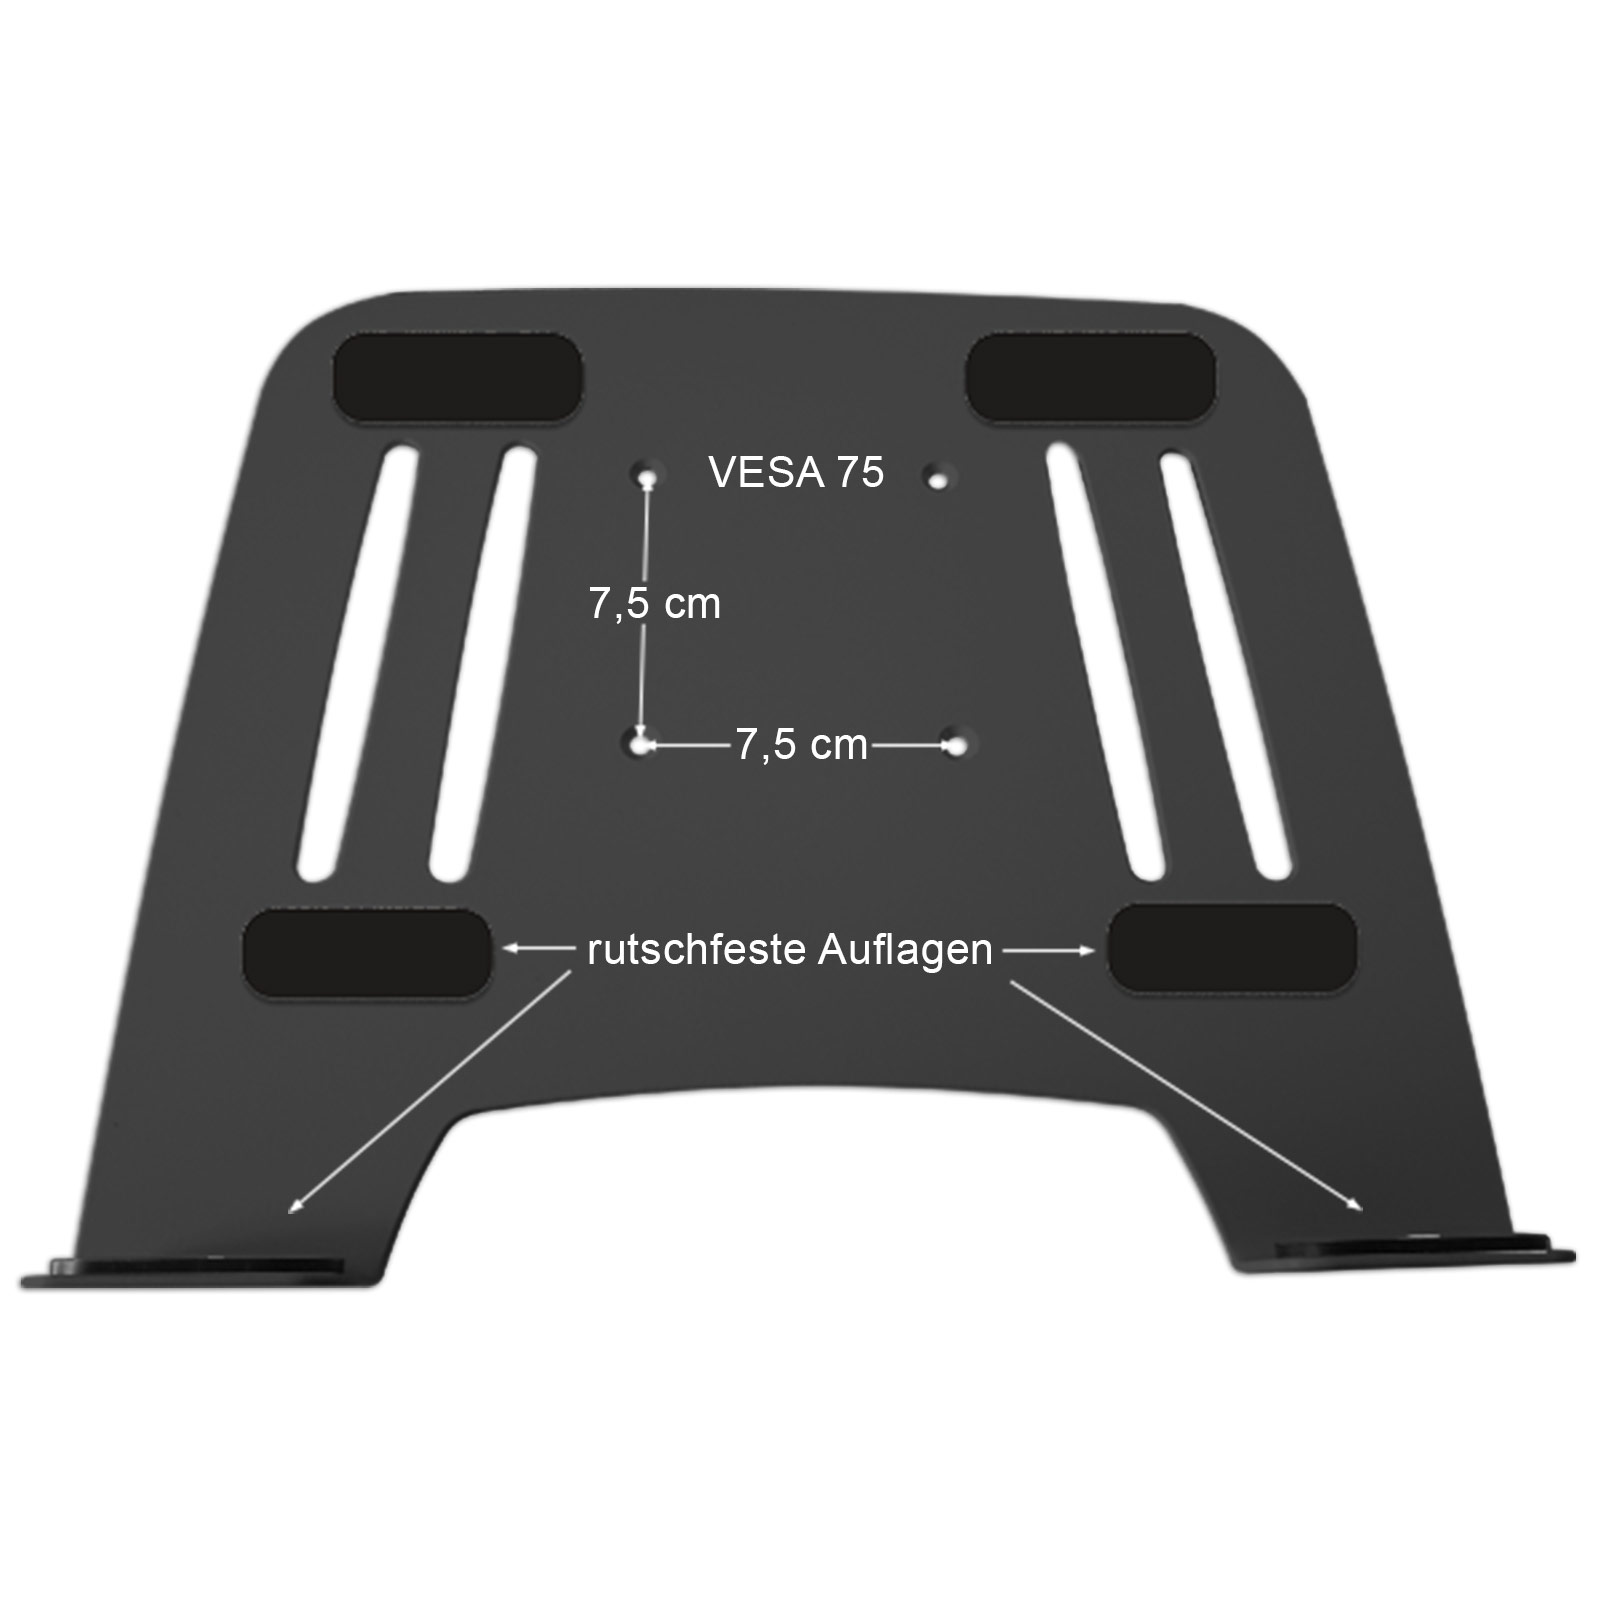 Notebook Modell: L52B-IP3B Halterung DRALL Adapterplatte mit Ablage Wandhalterung Wandhalterung Laptop schwarz schwarz INSTRUMENTS